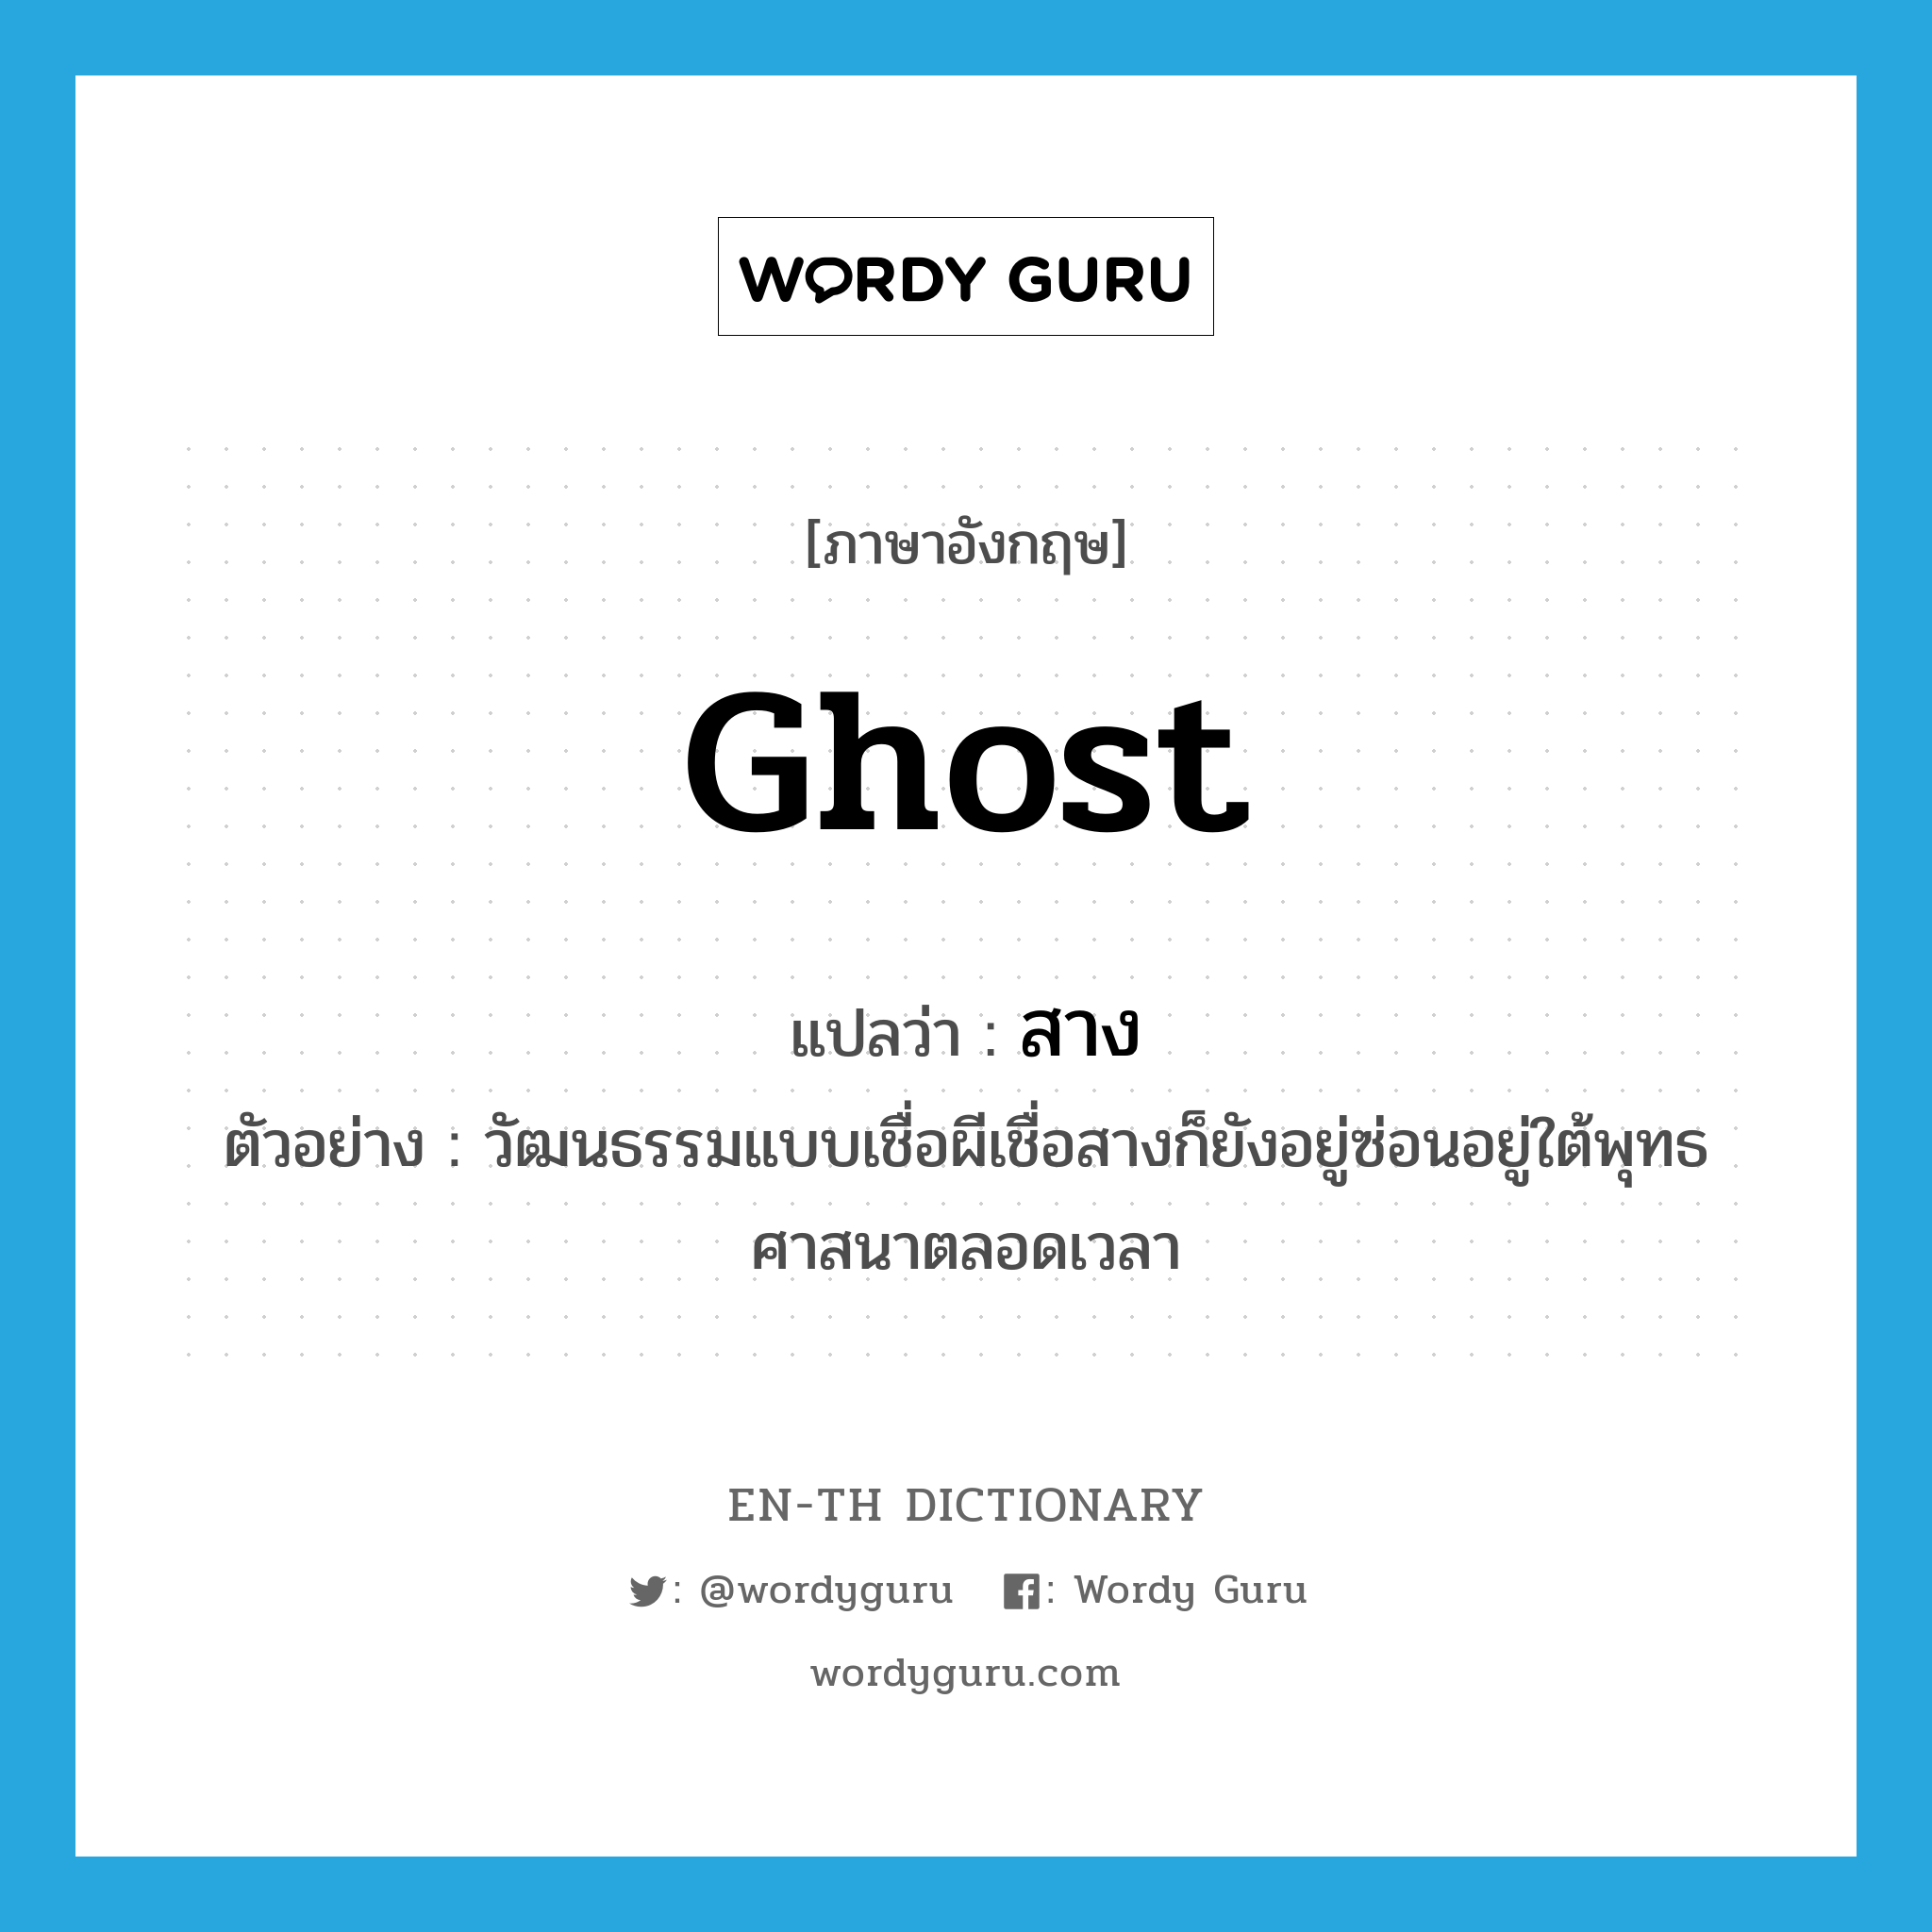 ghost แปลว่า?, คำศัพท์ภาษาอังกฤษ ghost แปลว่า สาง ประเภท N ตัวอย่าง วัฒนธรรมแบบเชื่อผีเชื่อสางก็ยังอยู่ซ่อนอยู่ใต้พุทธศาสนาตลอดเวลา หมวด N